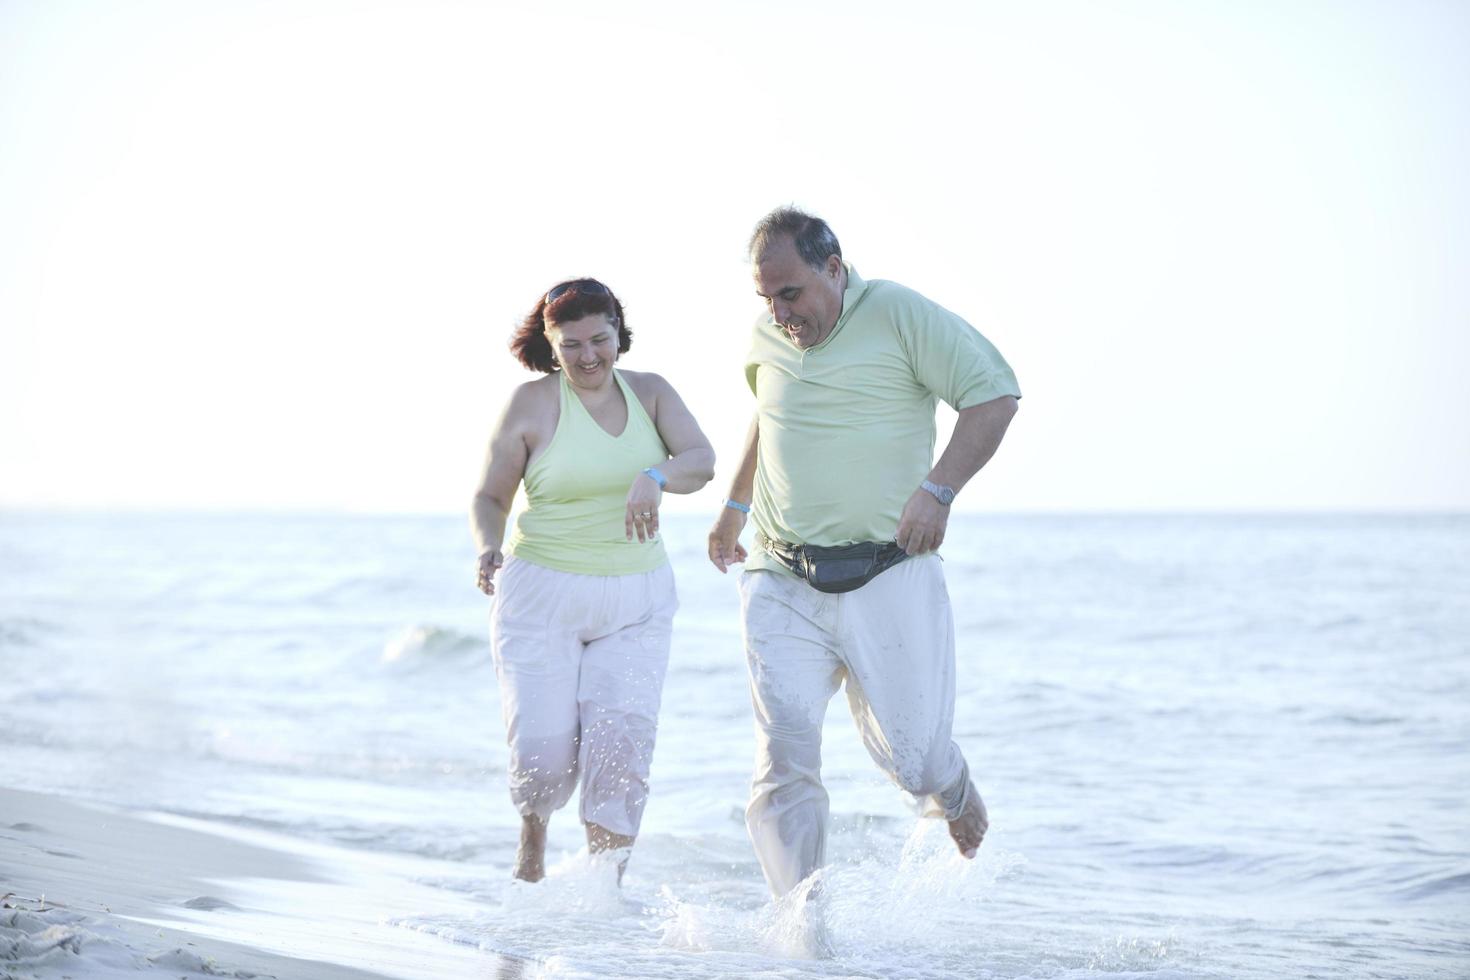 feliz pareja de ancianos en la playa foto